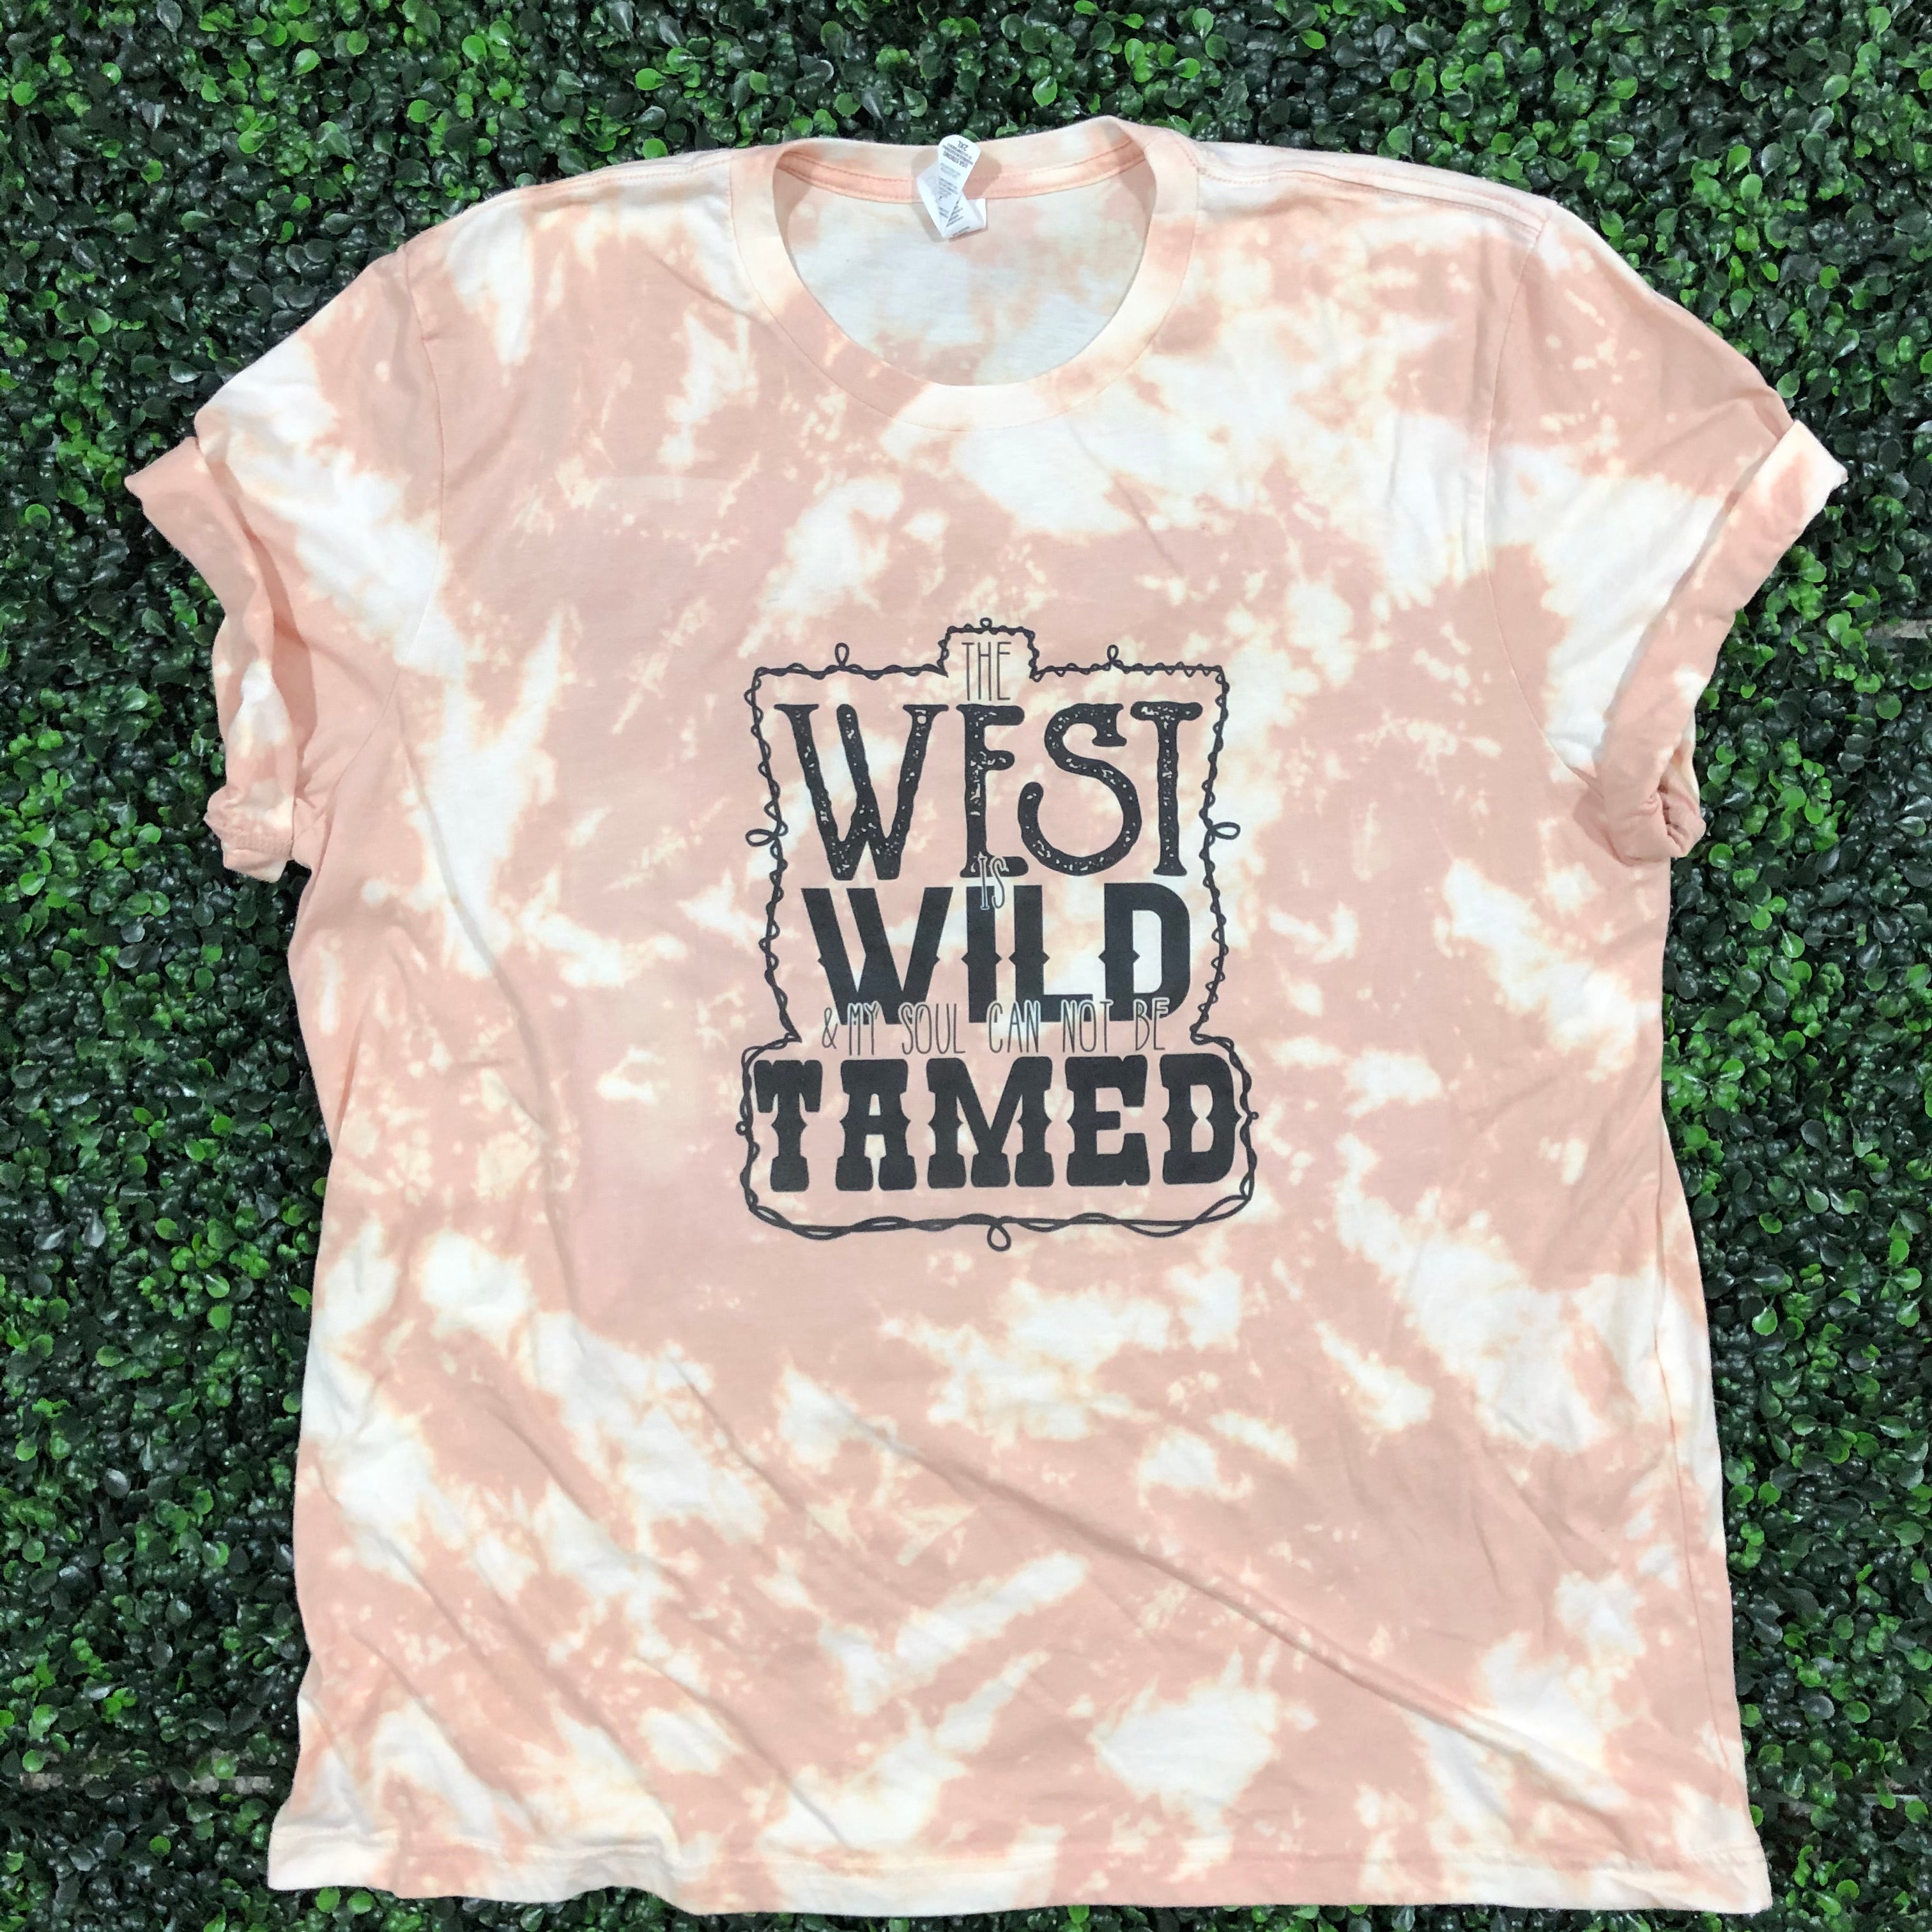 West, Wild, Tamed Top Design